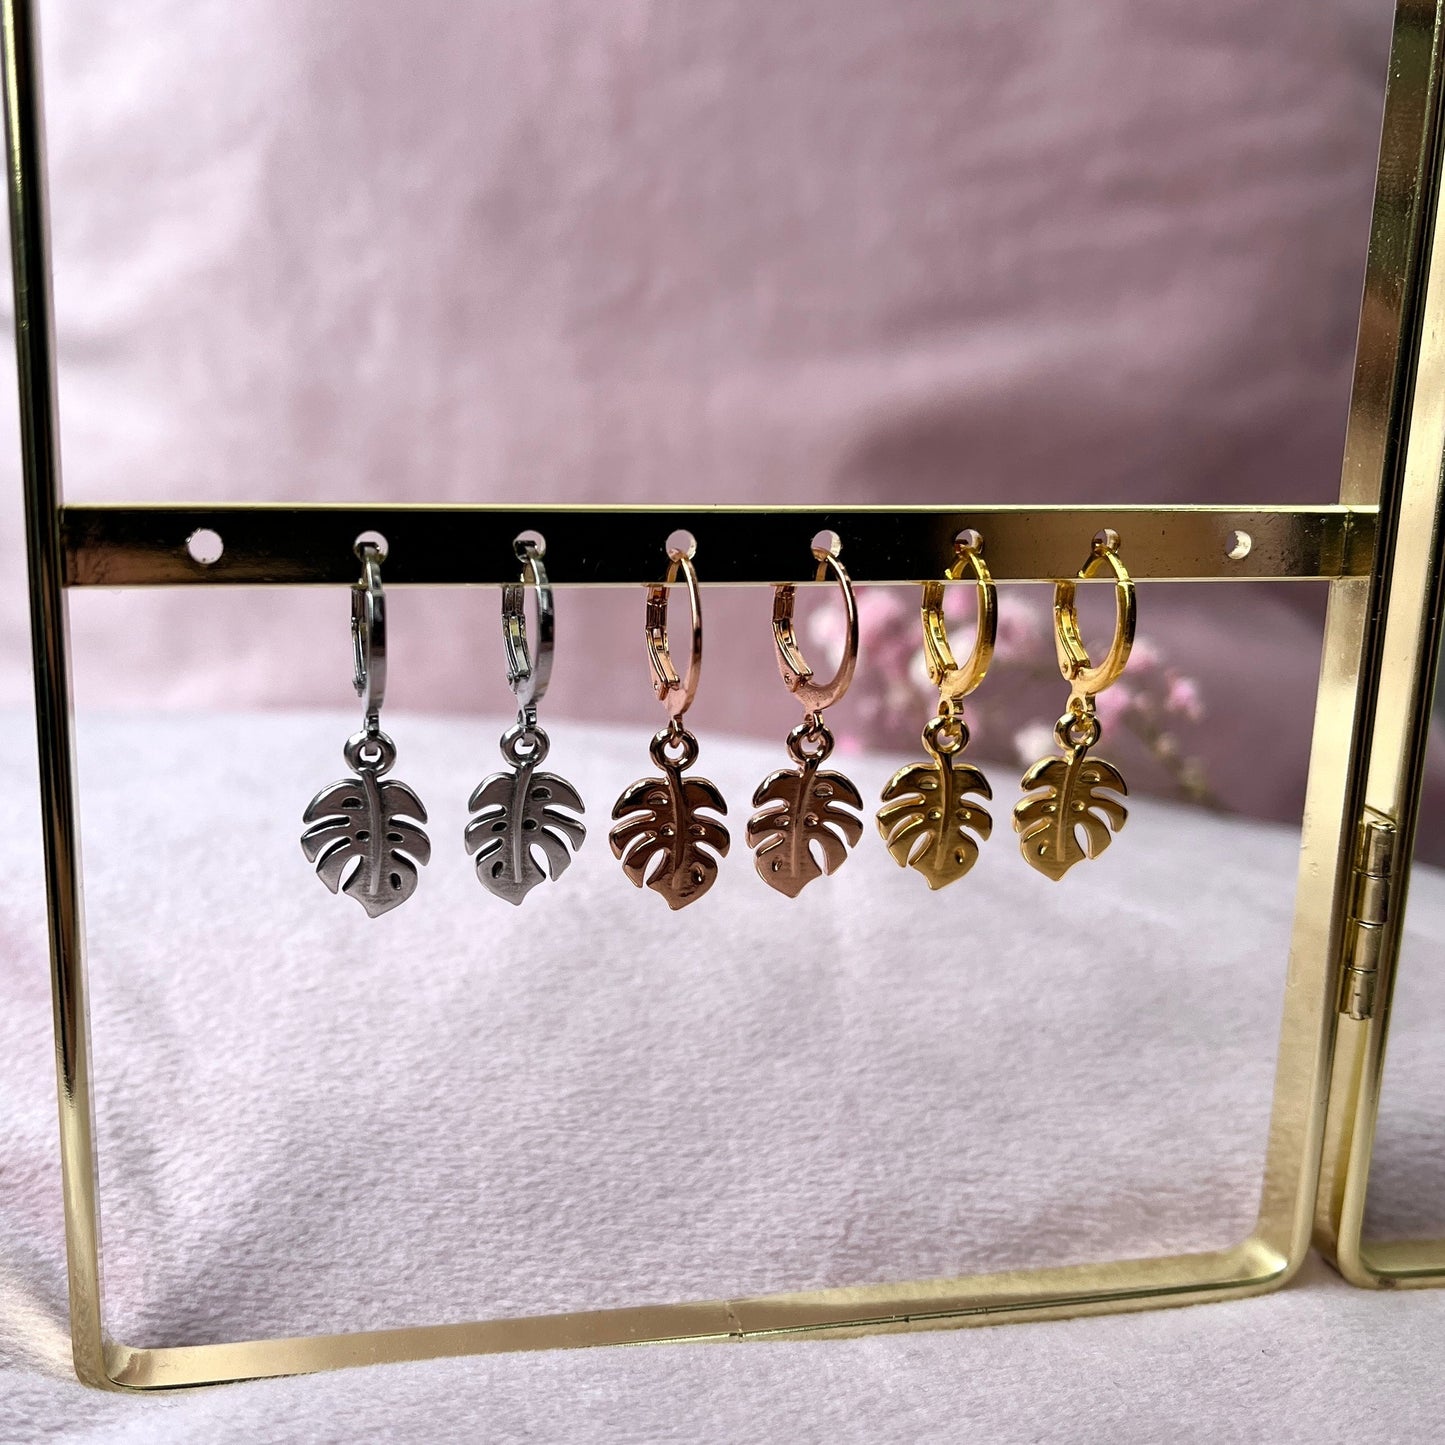 Monstera Ohrringe in unterschiedlichen Farben: Silber, Rosegold und Gold.